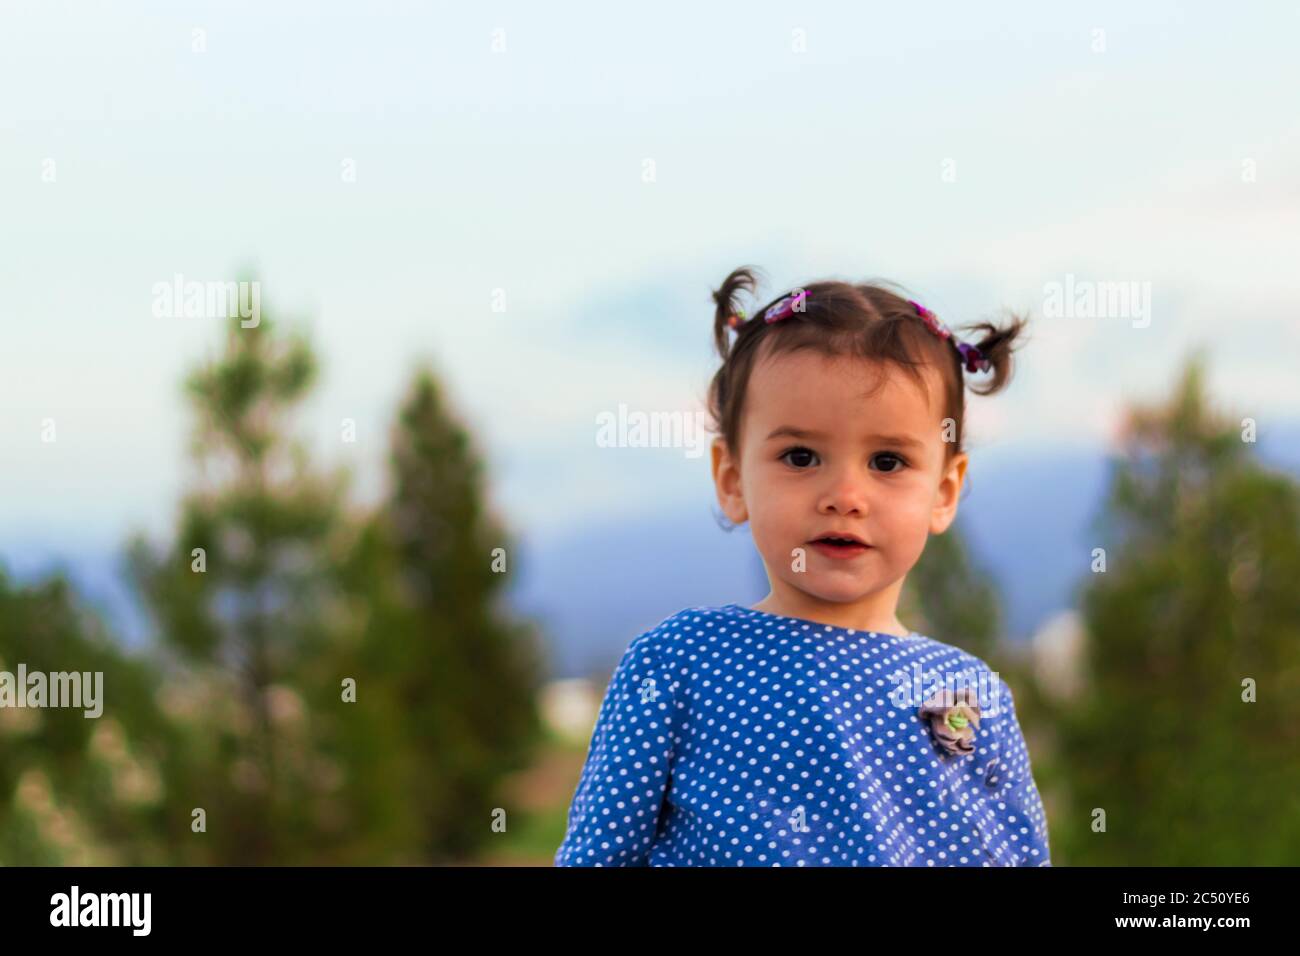 Ein nettes kleines Mädchen in einem stilvollen Kleid mit Punktmuster Stockfoto